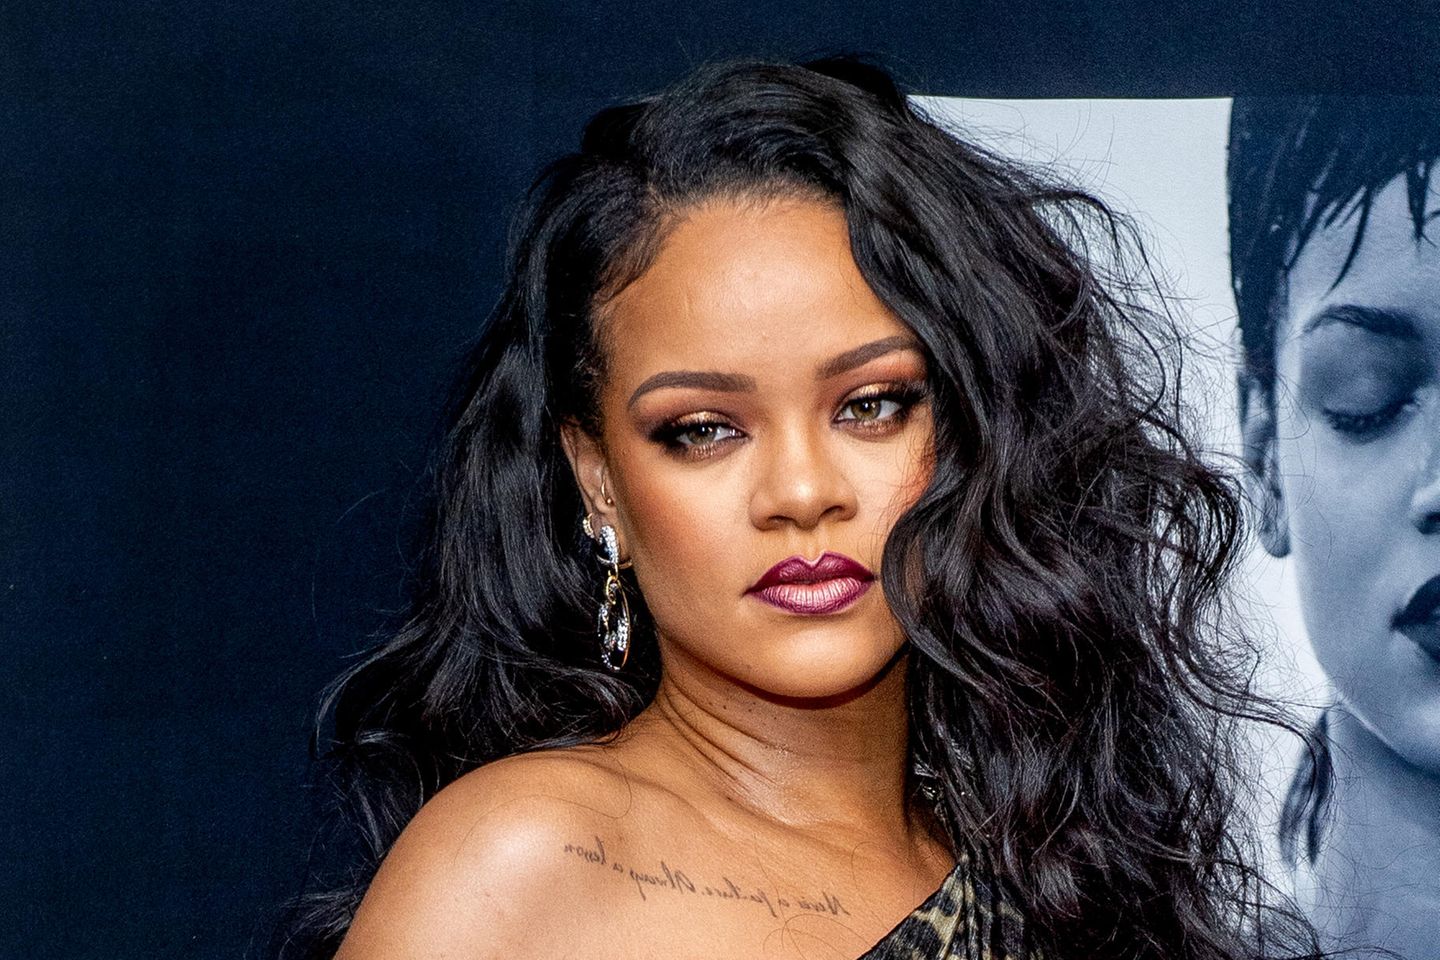 Dass sich Rihanna mit Make-up auskennt, dürfte mittlerweile bekannt sejn. In 2017 launchte sie ihre Marke "Fenty Beauty". Aber auch an ihren besonderen Looks sieht man ihre Expertise: Der Lidschatten im Halo-Style lässt ihre Augen größer wirken. Die Ombré Lippen machen den sexy Look perfekt.